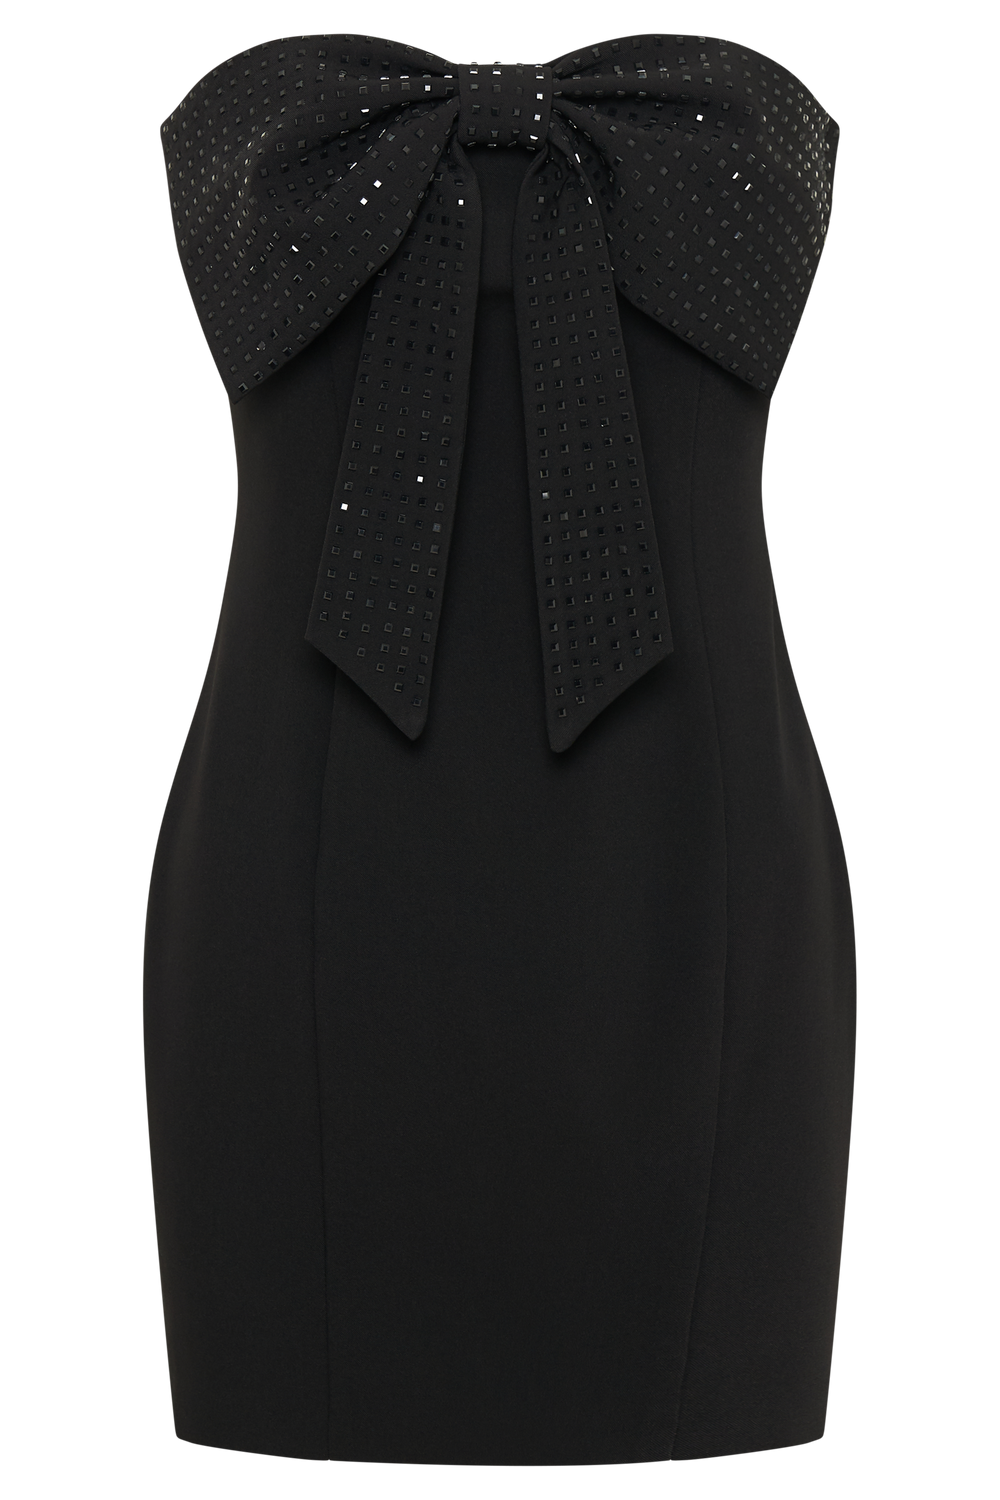 Saoirse Strapless Mini Dress With Diamante Bow - Black